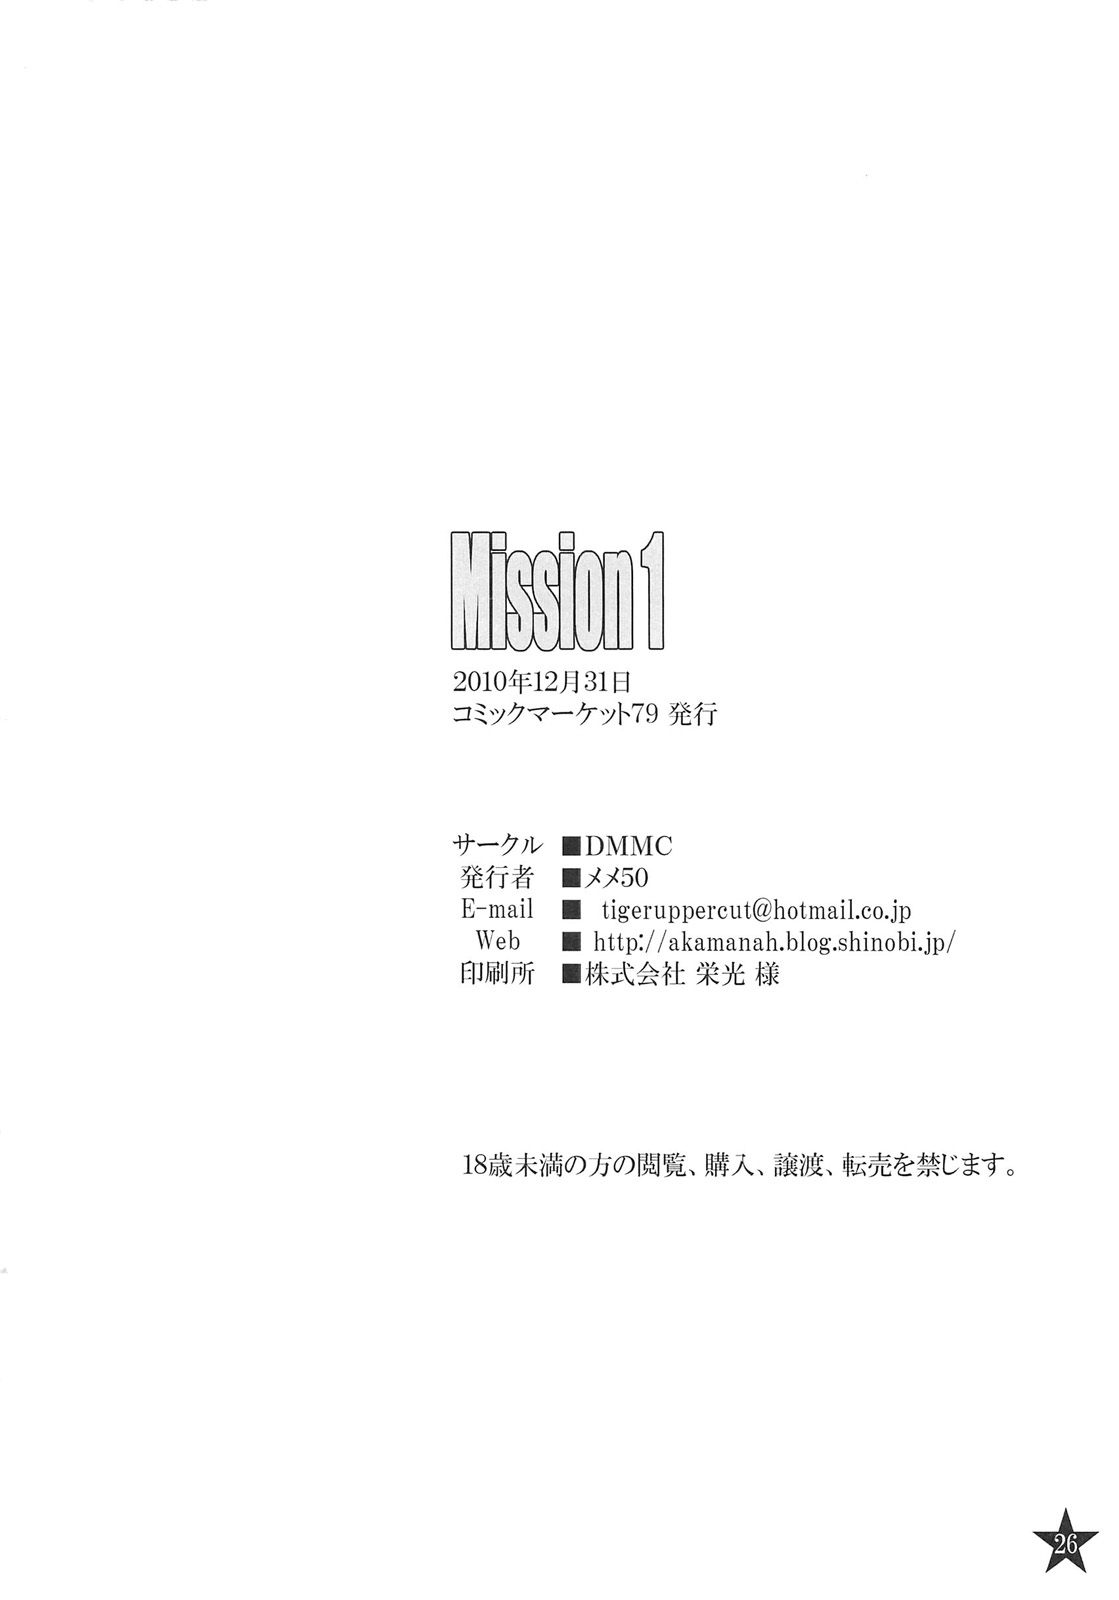 (C79) [DMMC (メメ50)] Mission 1 (デビルメイクライ4)